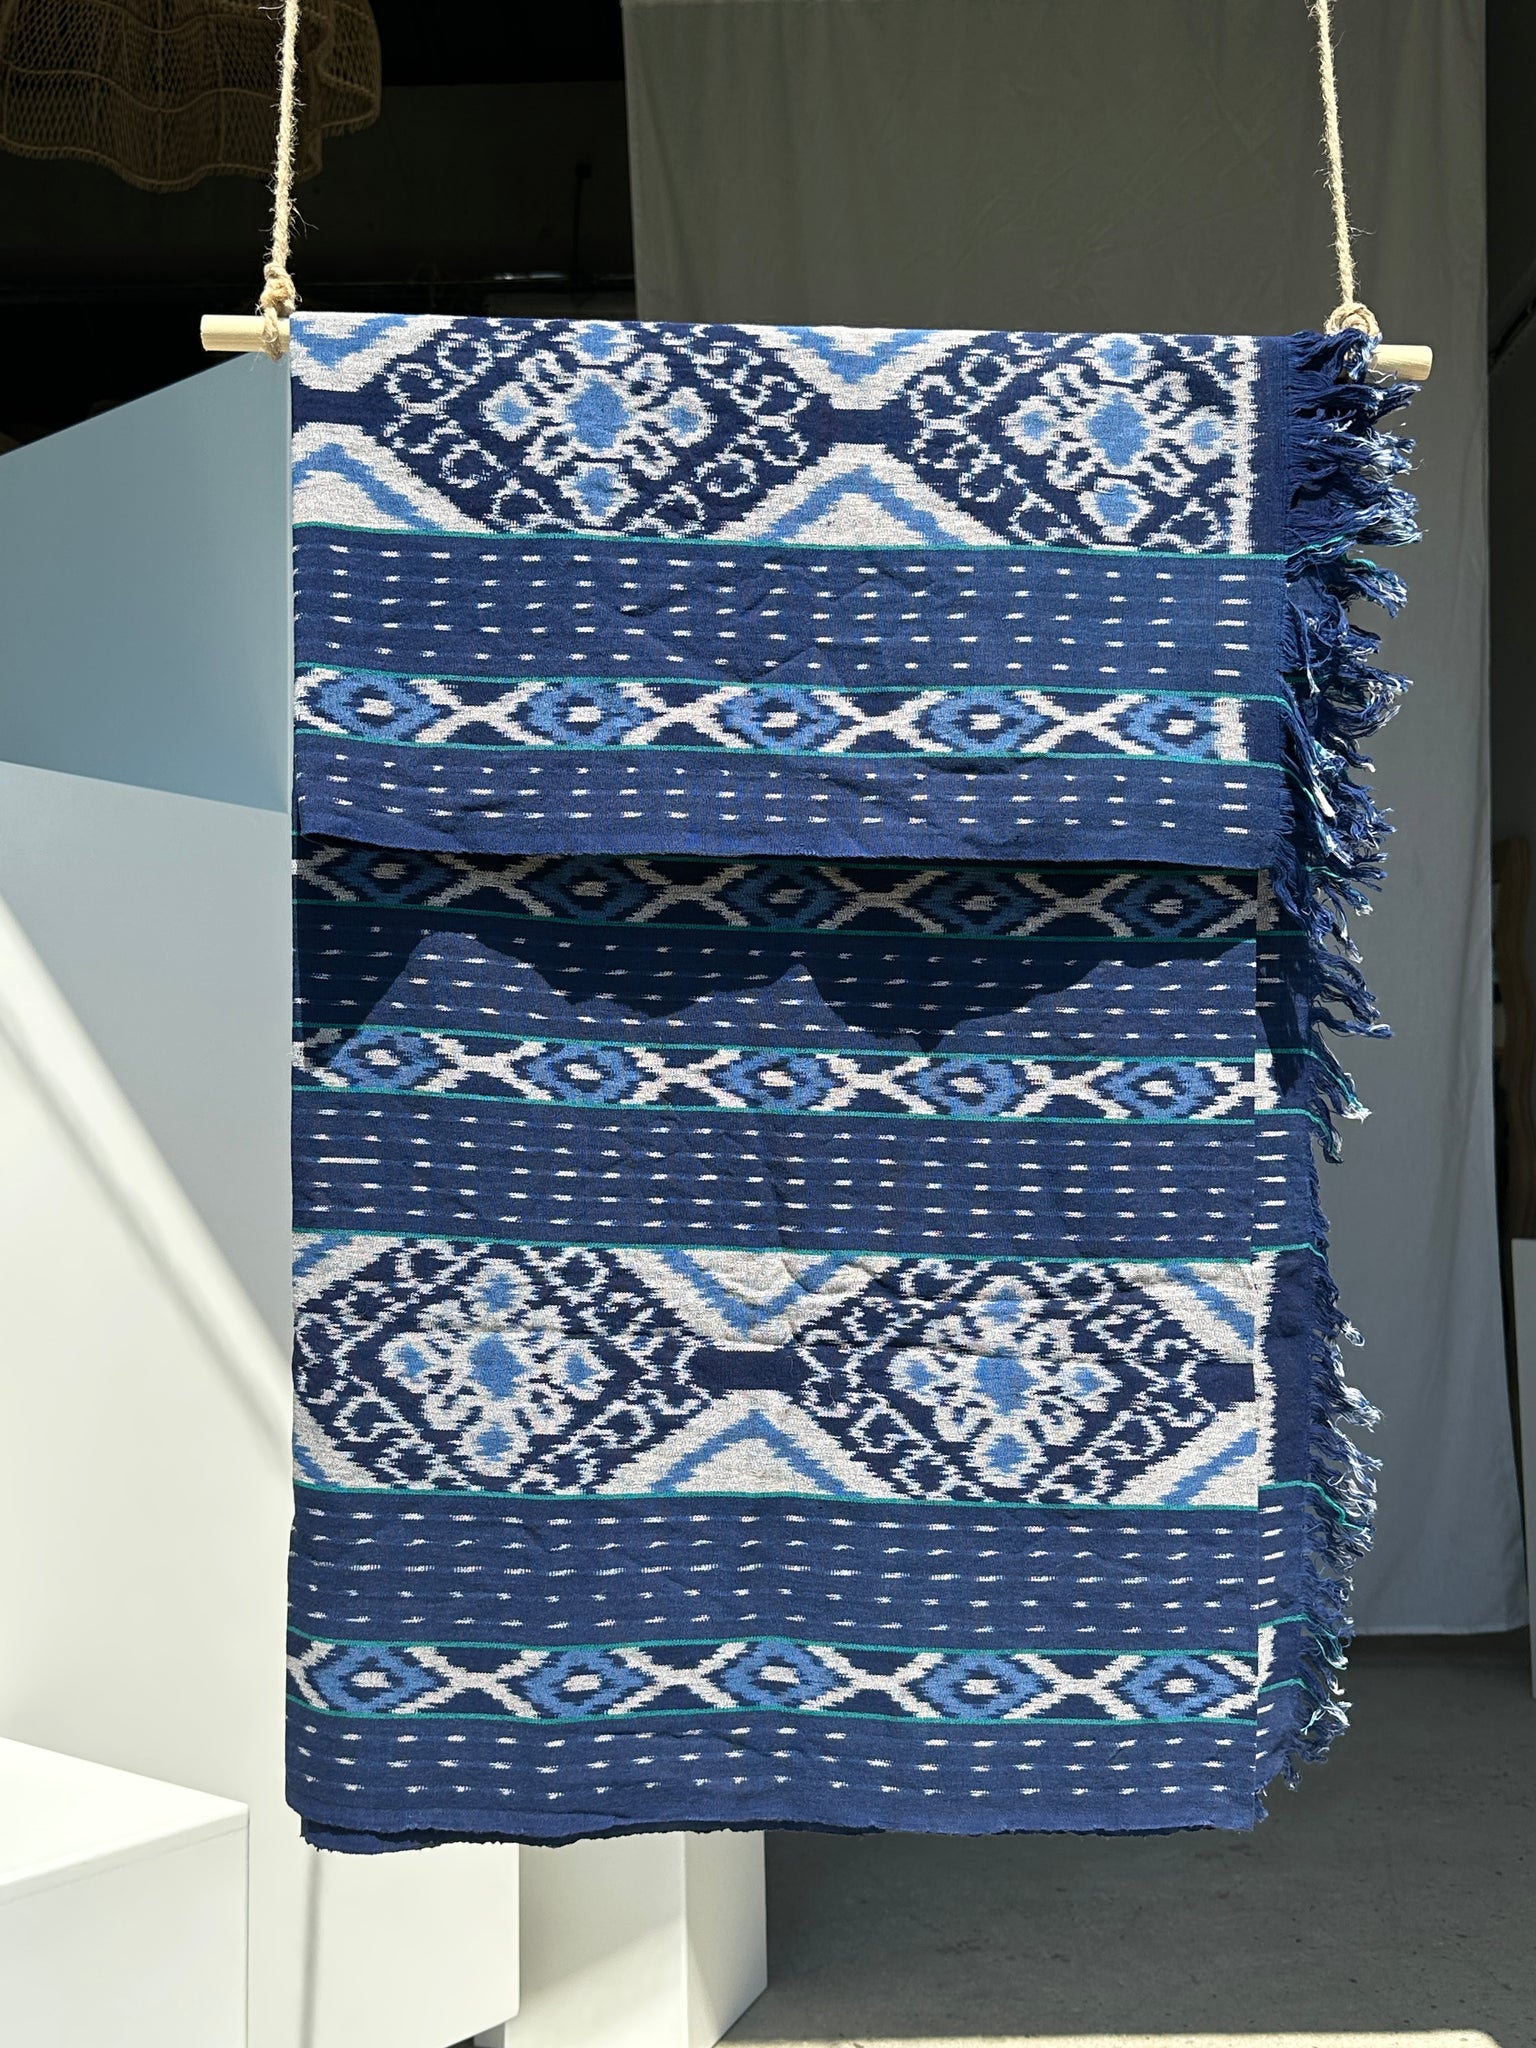 Grand ikat bleu et blanc frise de petits losanges 2m35x1m15